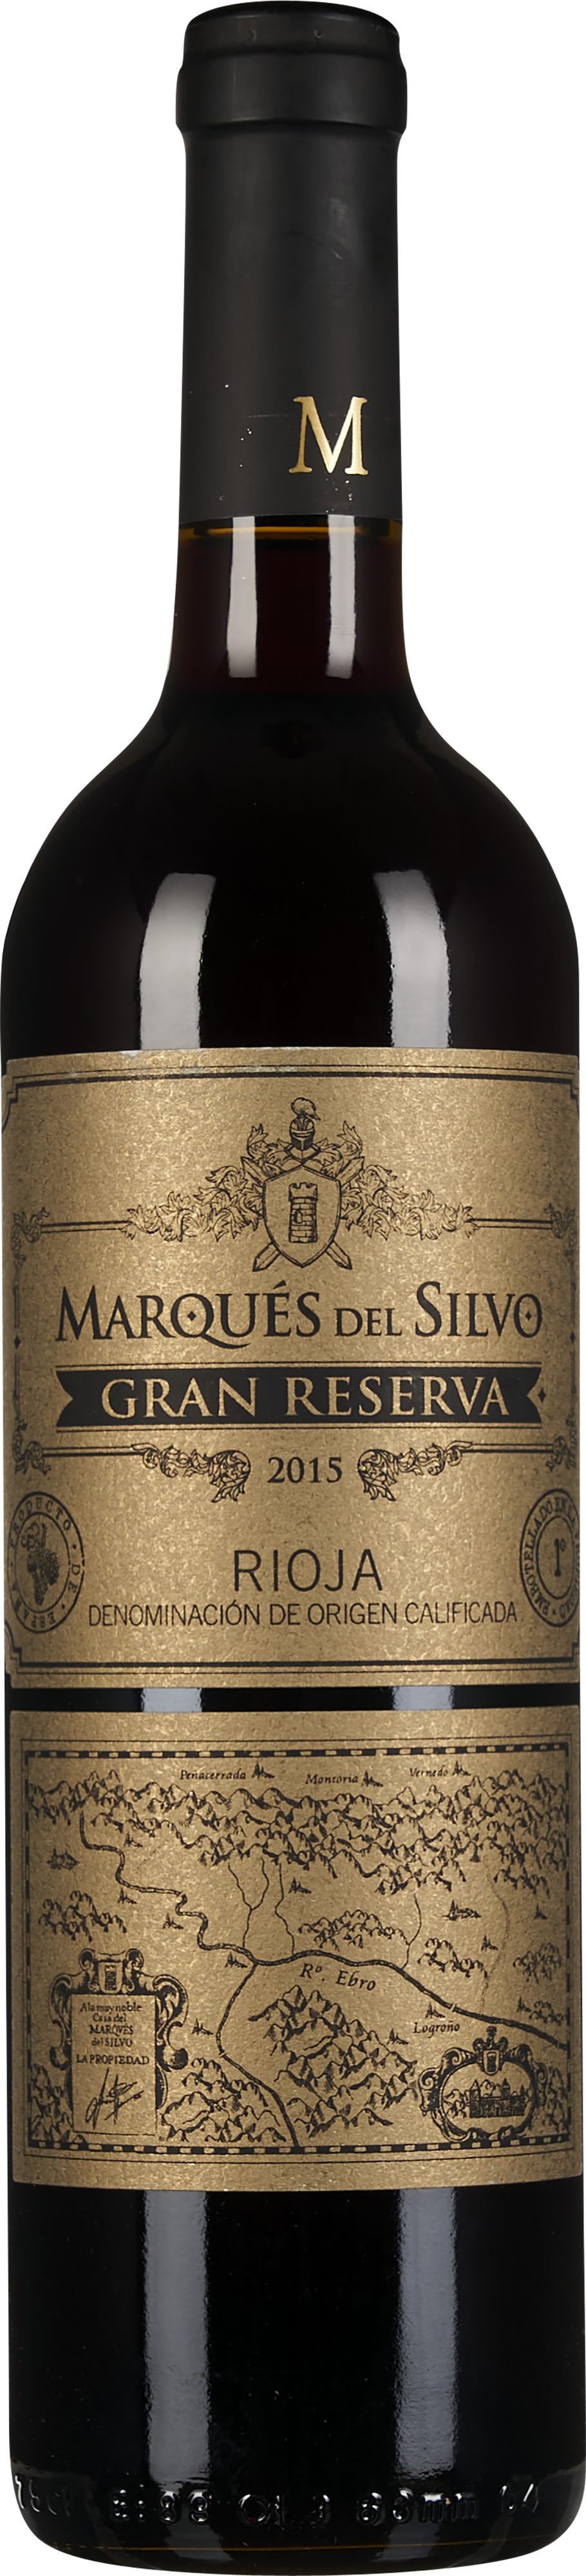 Bodega Marqués del Silvo Rioja Gran Reserva 2015 - WEIN & CO